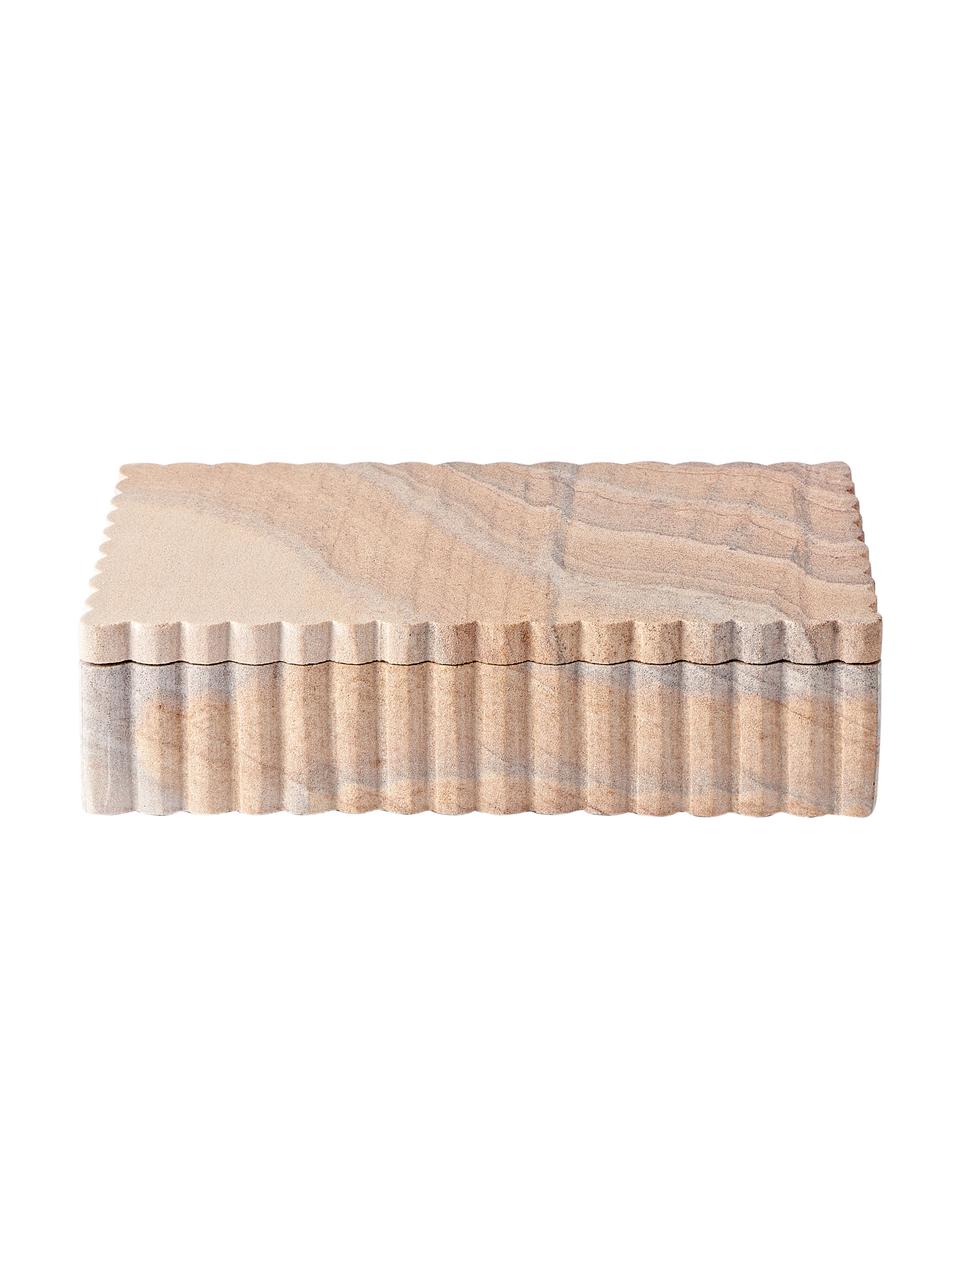 Scatola portaoggetti con bordo scanalato Rita, Pietra arenaria, Tonalità beige con finitura sabbia, Larg. 20 x Alt. 5 cm